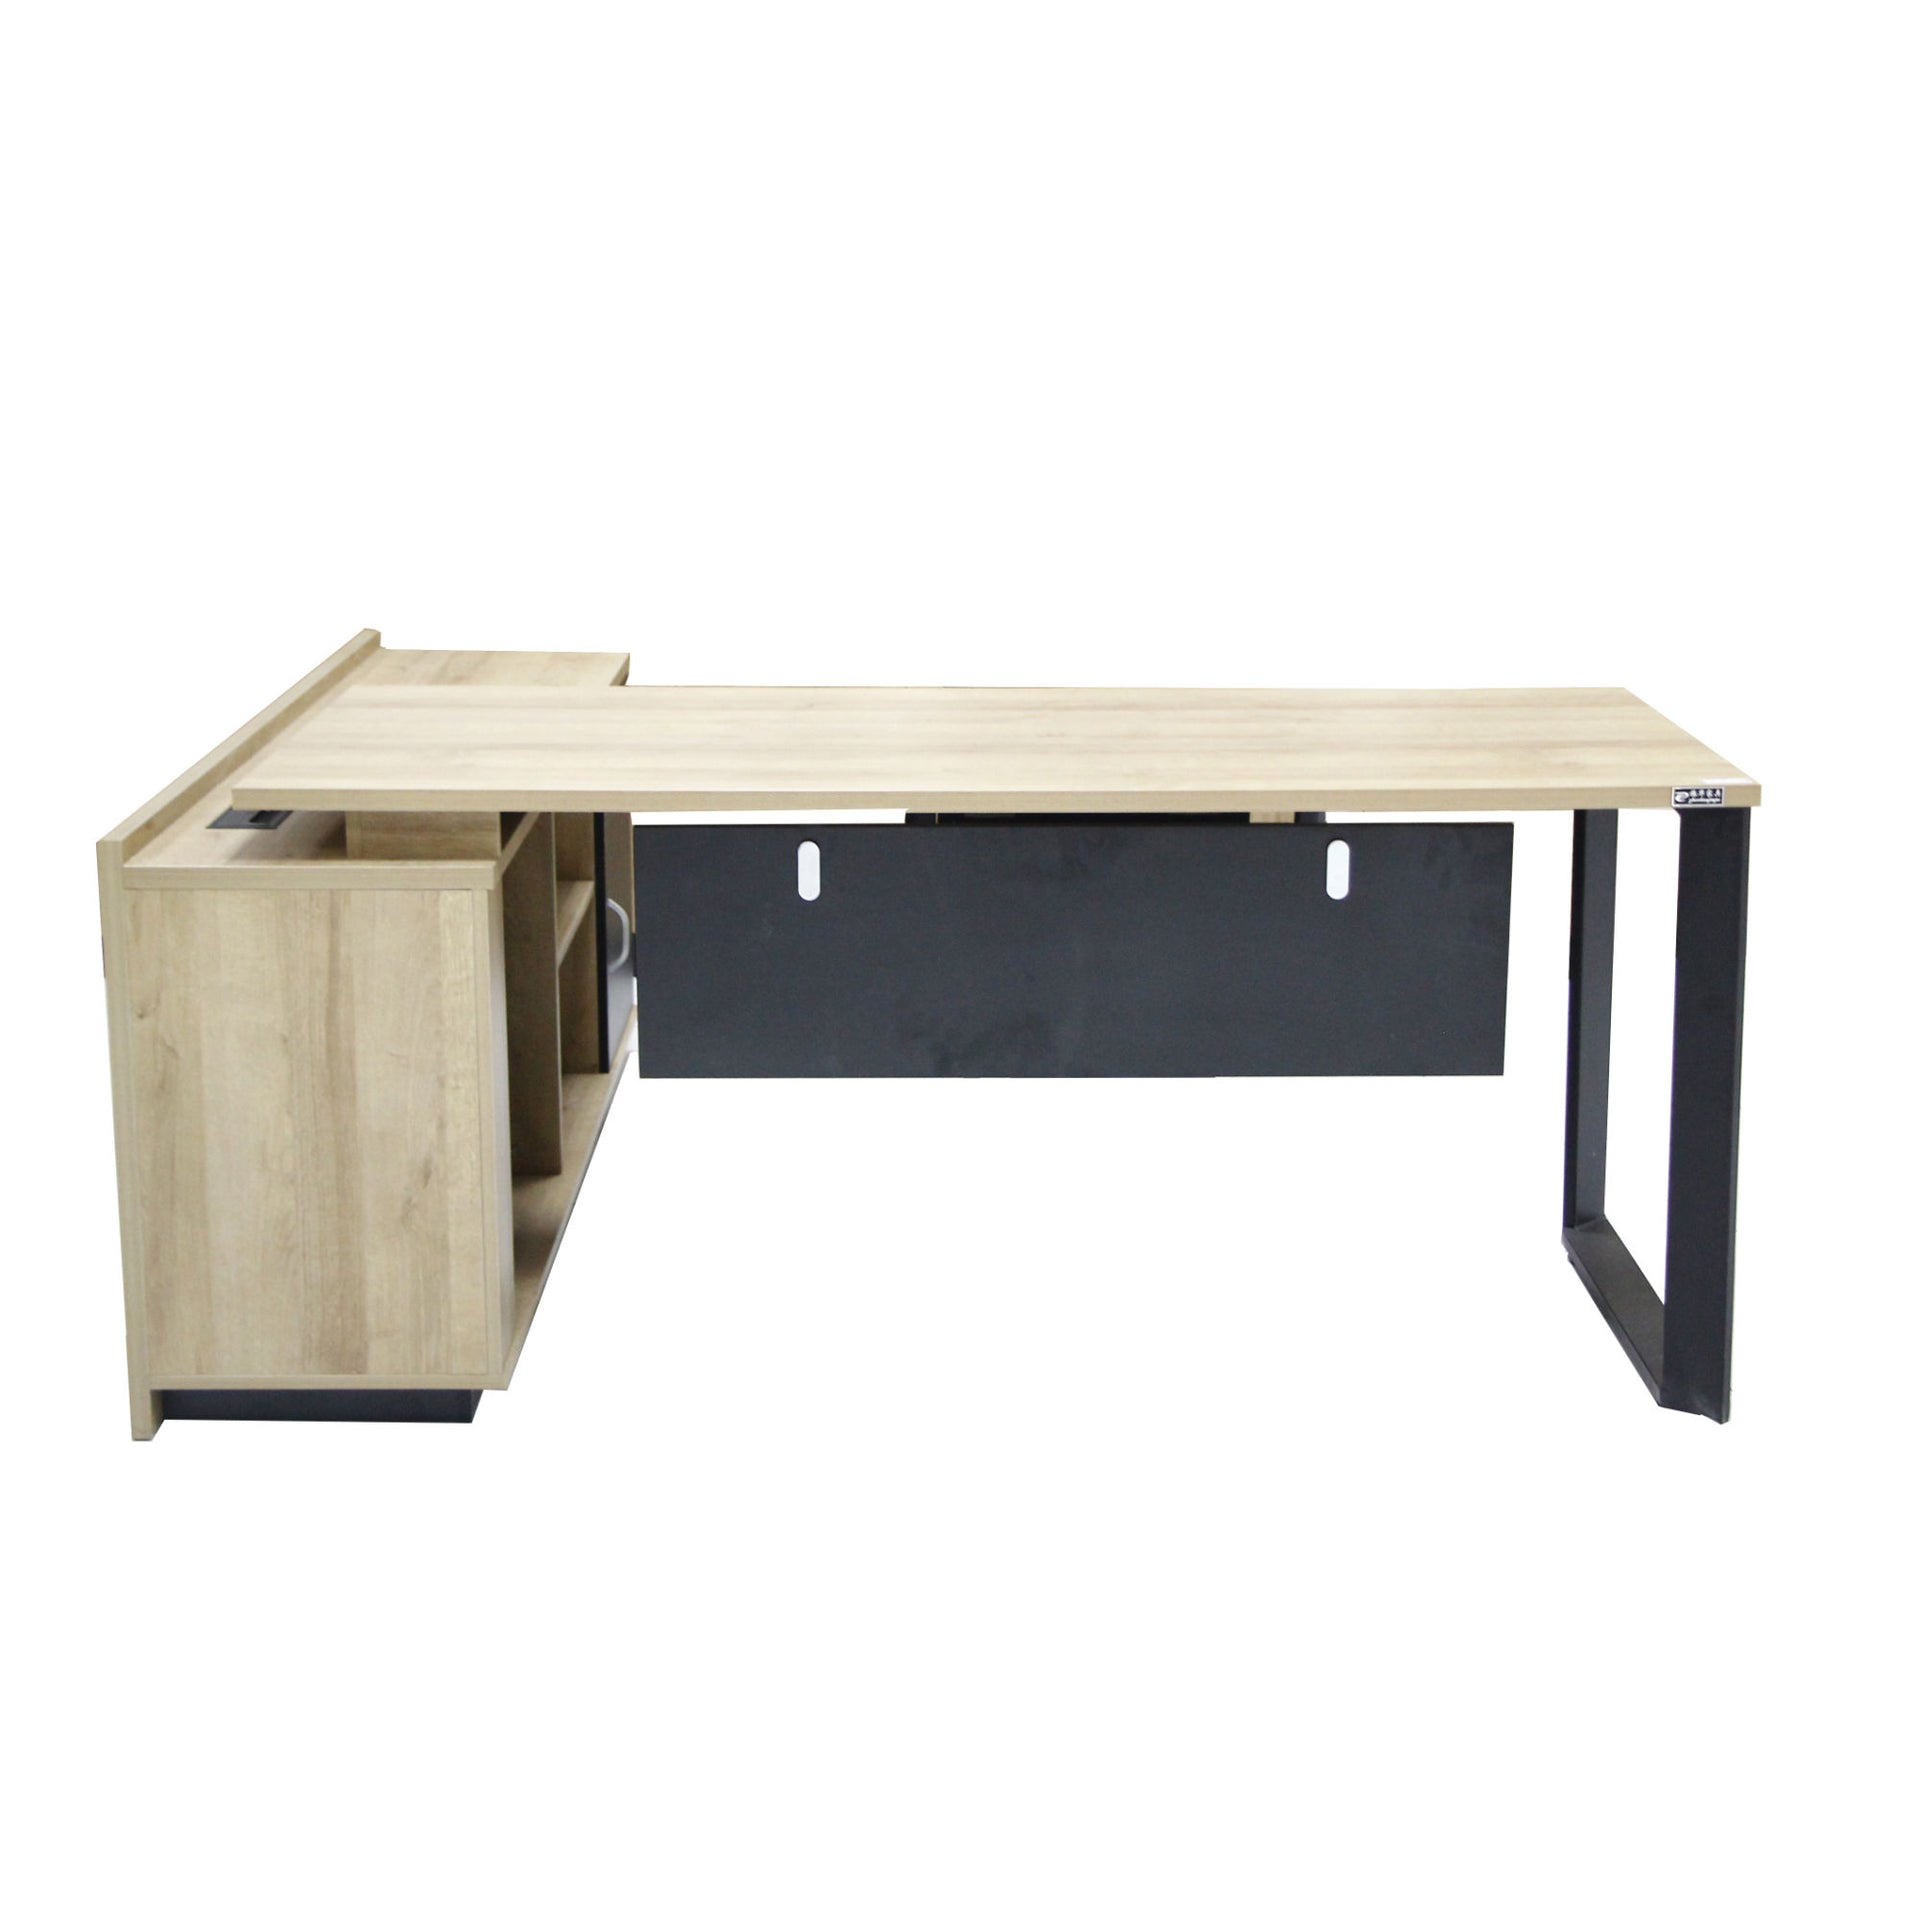 L Shaped Modern Office Furniture Desk Melamine